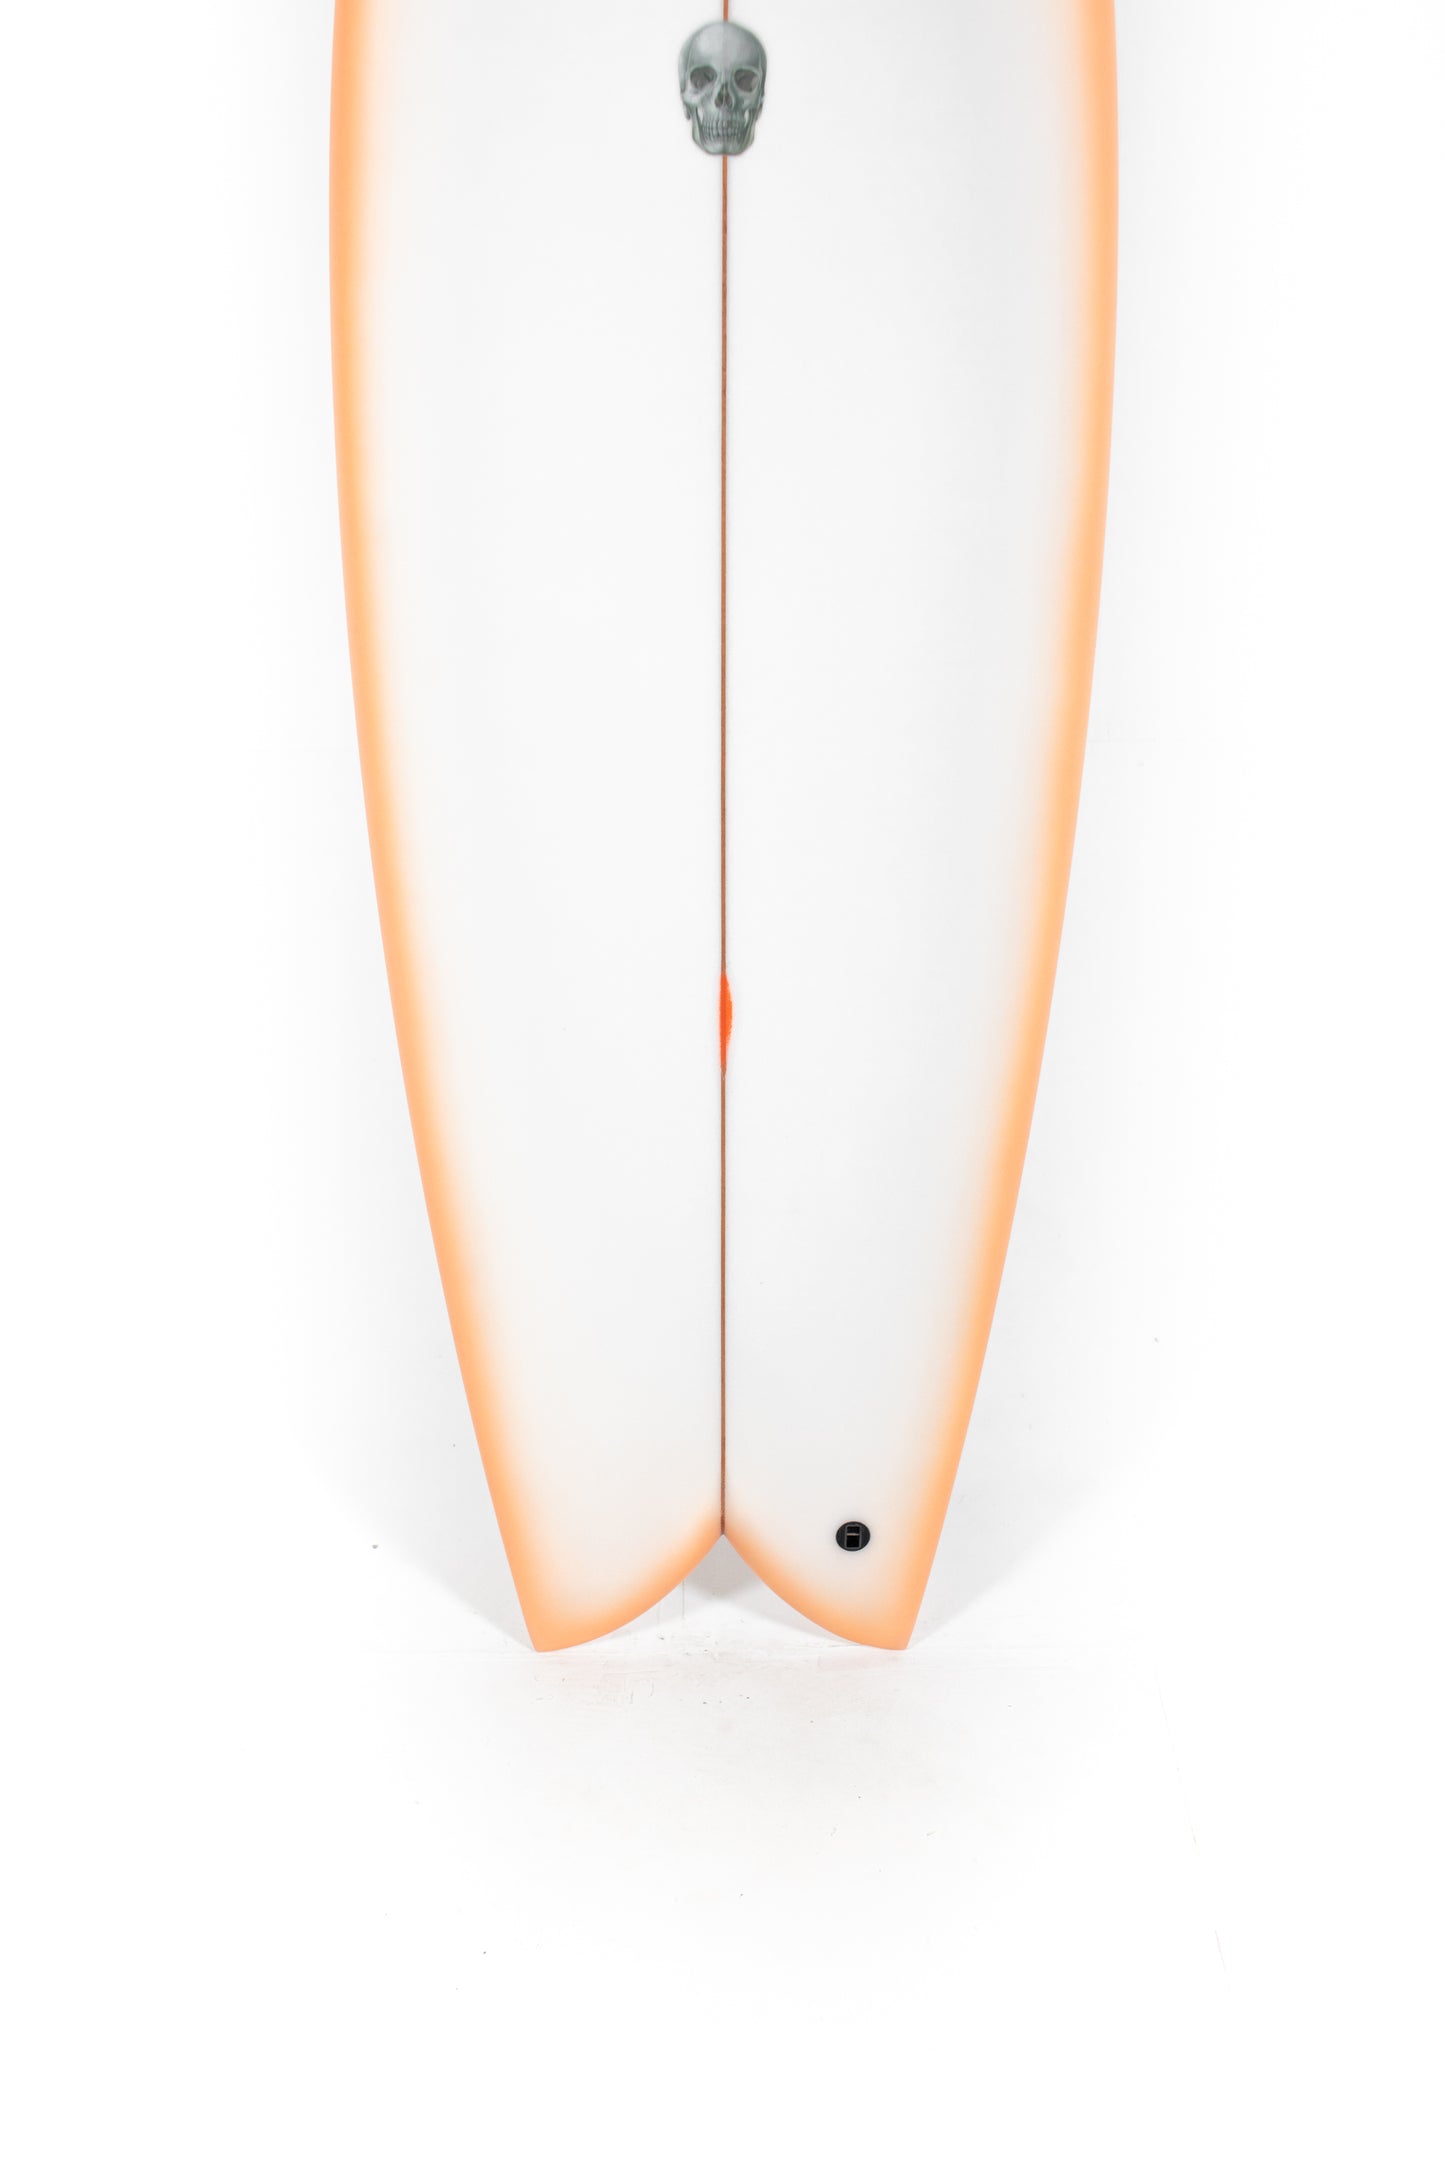 
                  
                    Pukas Surf Shop - Christenson Surfboards - MYCONAUT - 5'9" x 21 x 2 9/16 - CX04479
                  
                